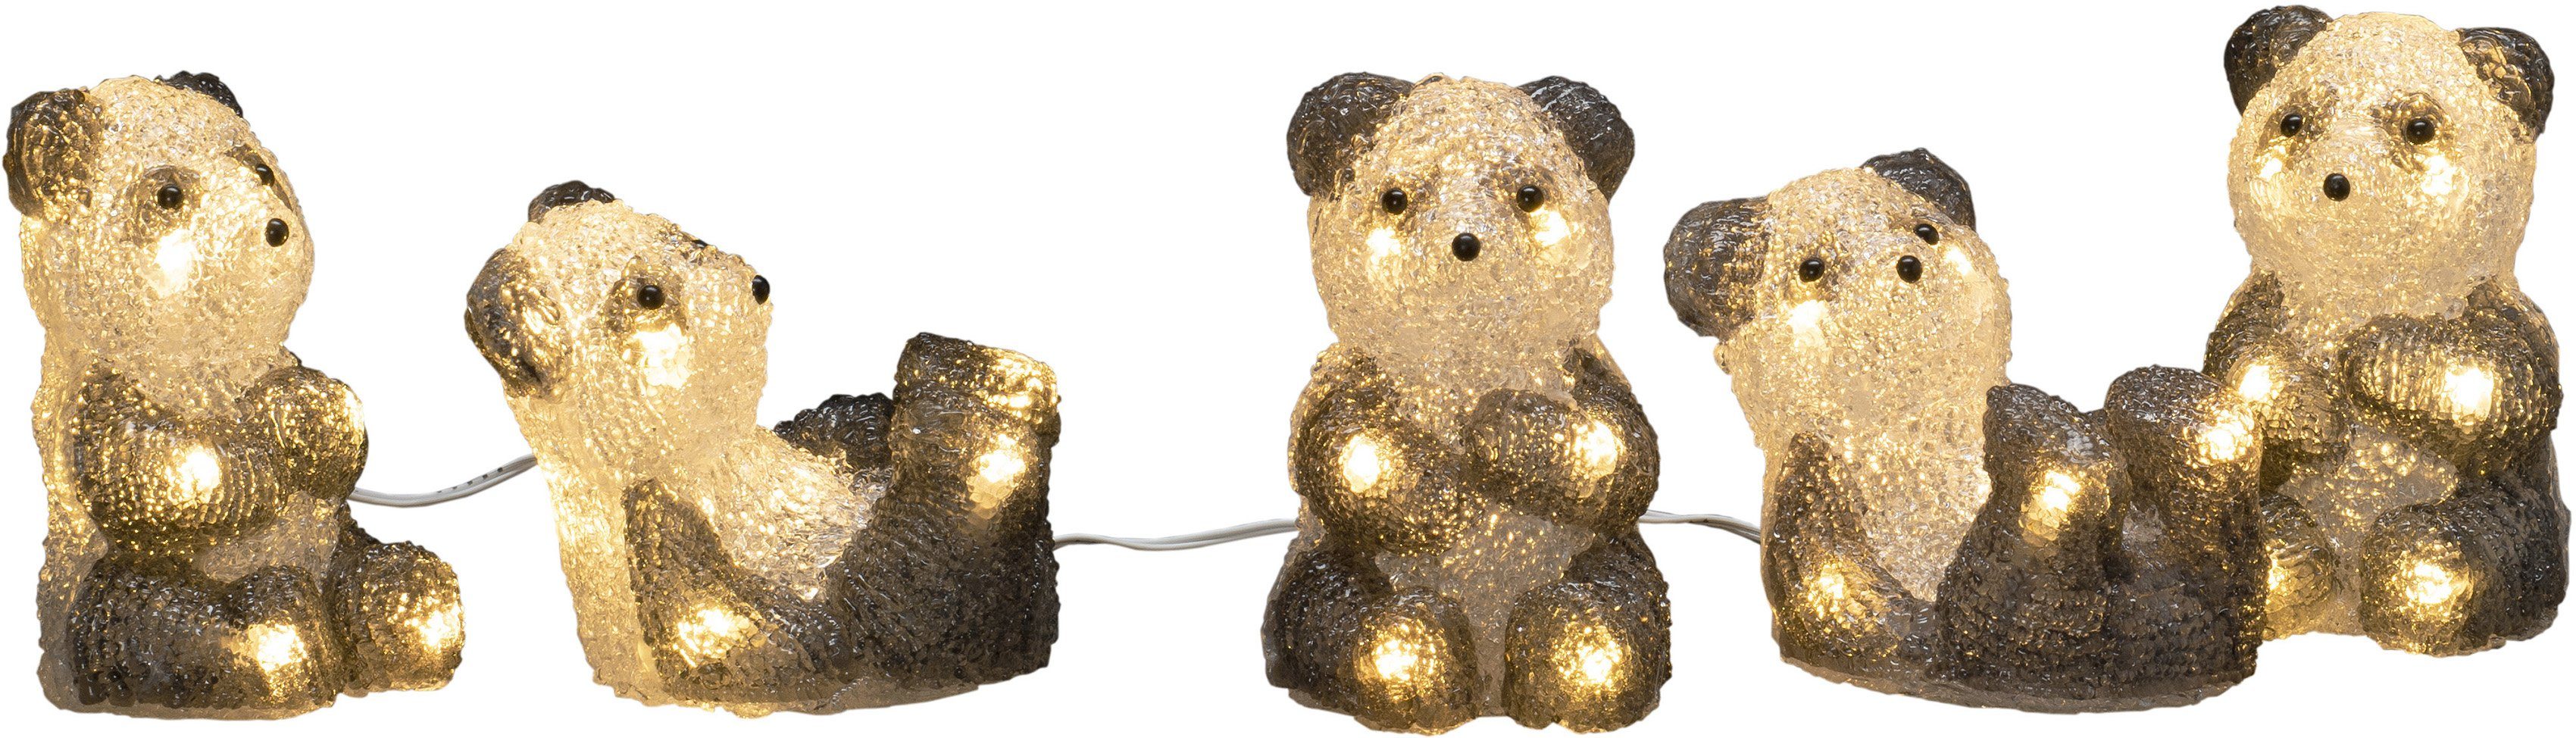 KONSTSMIDE LED-Lichterkette Weihnachtsdeko aussen, 40 warm weiße Dioden